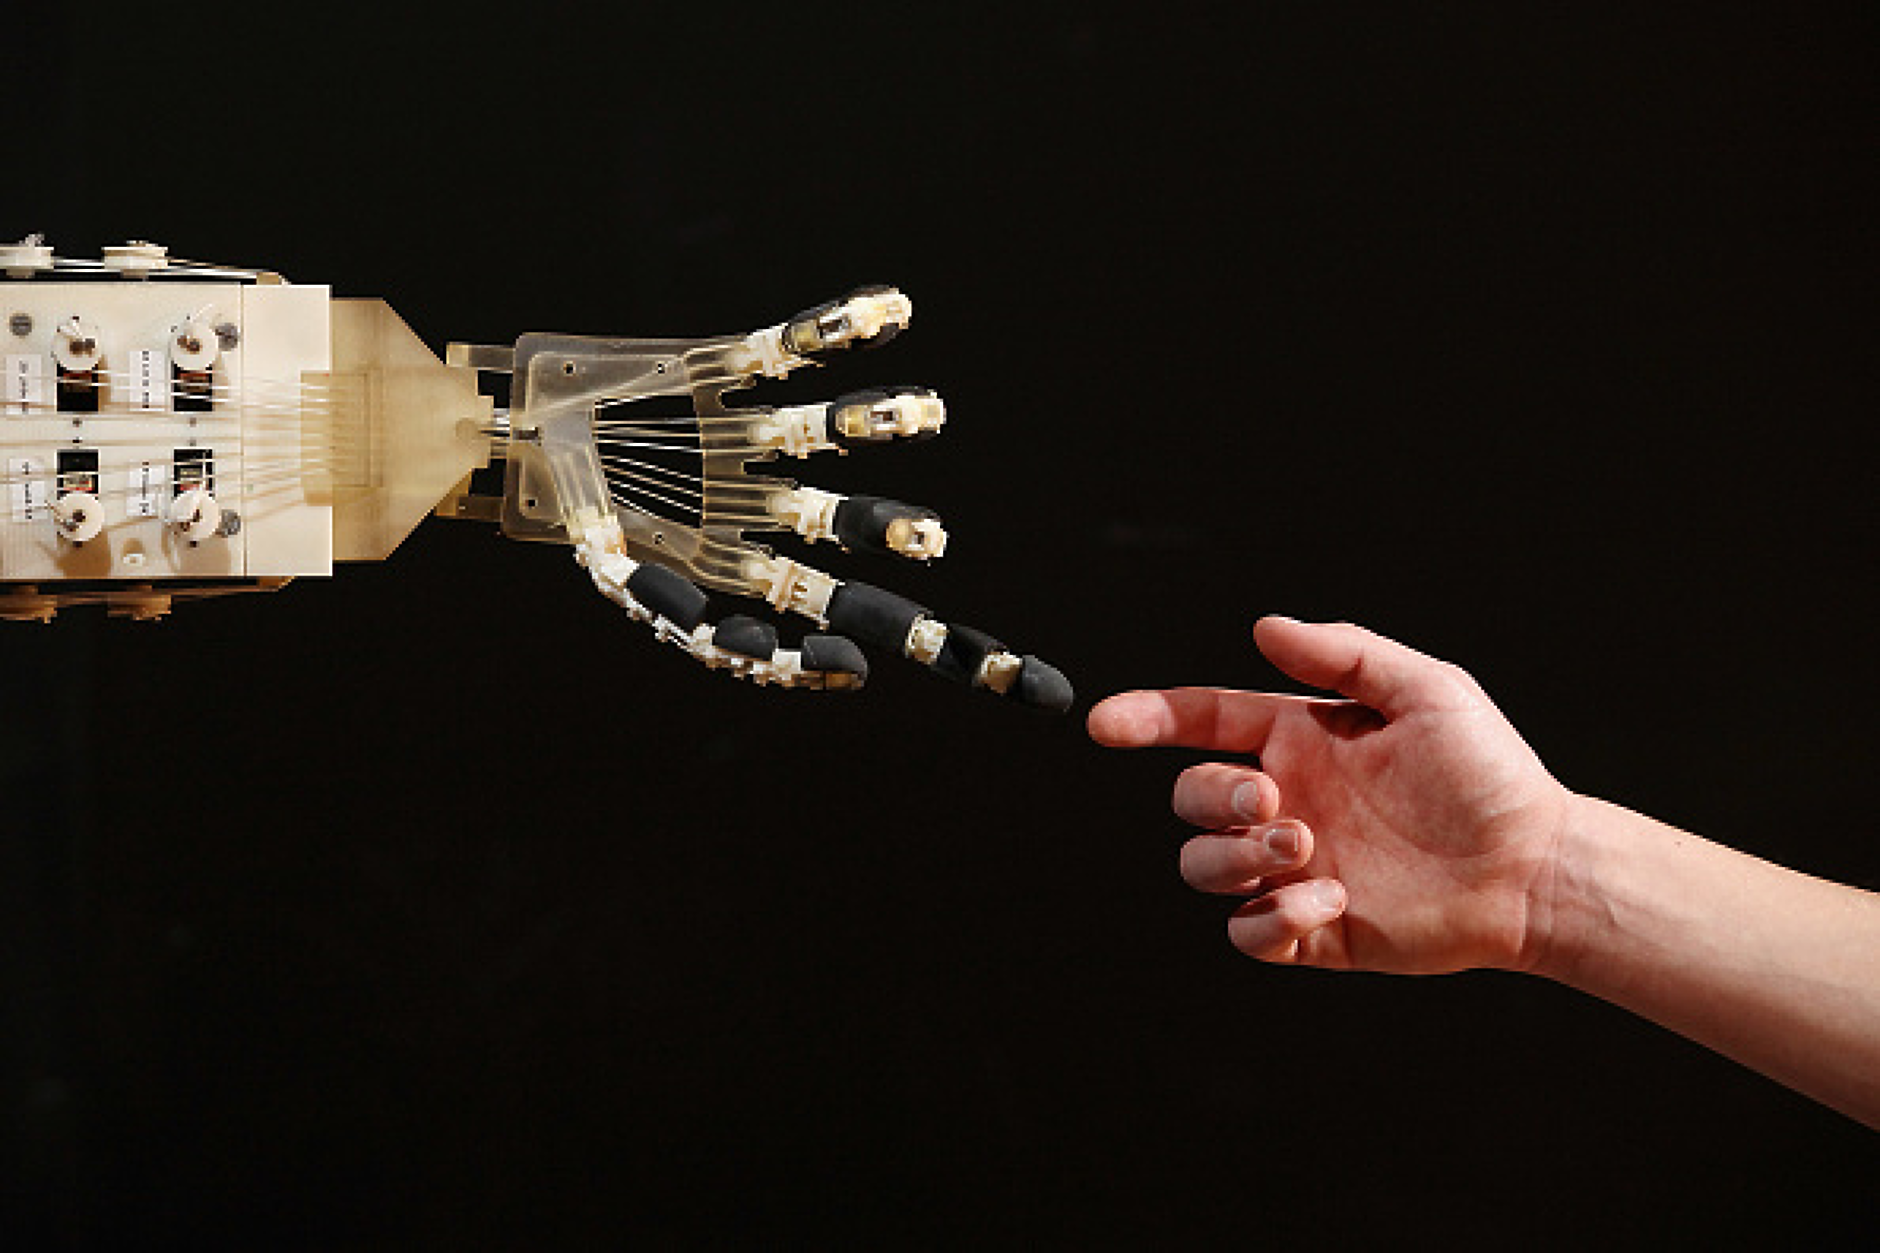 Китайски стартъп започва масово производство на хуманоидни роботи